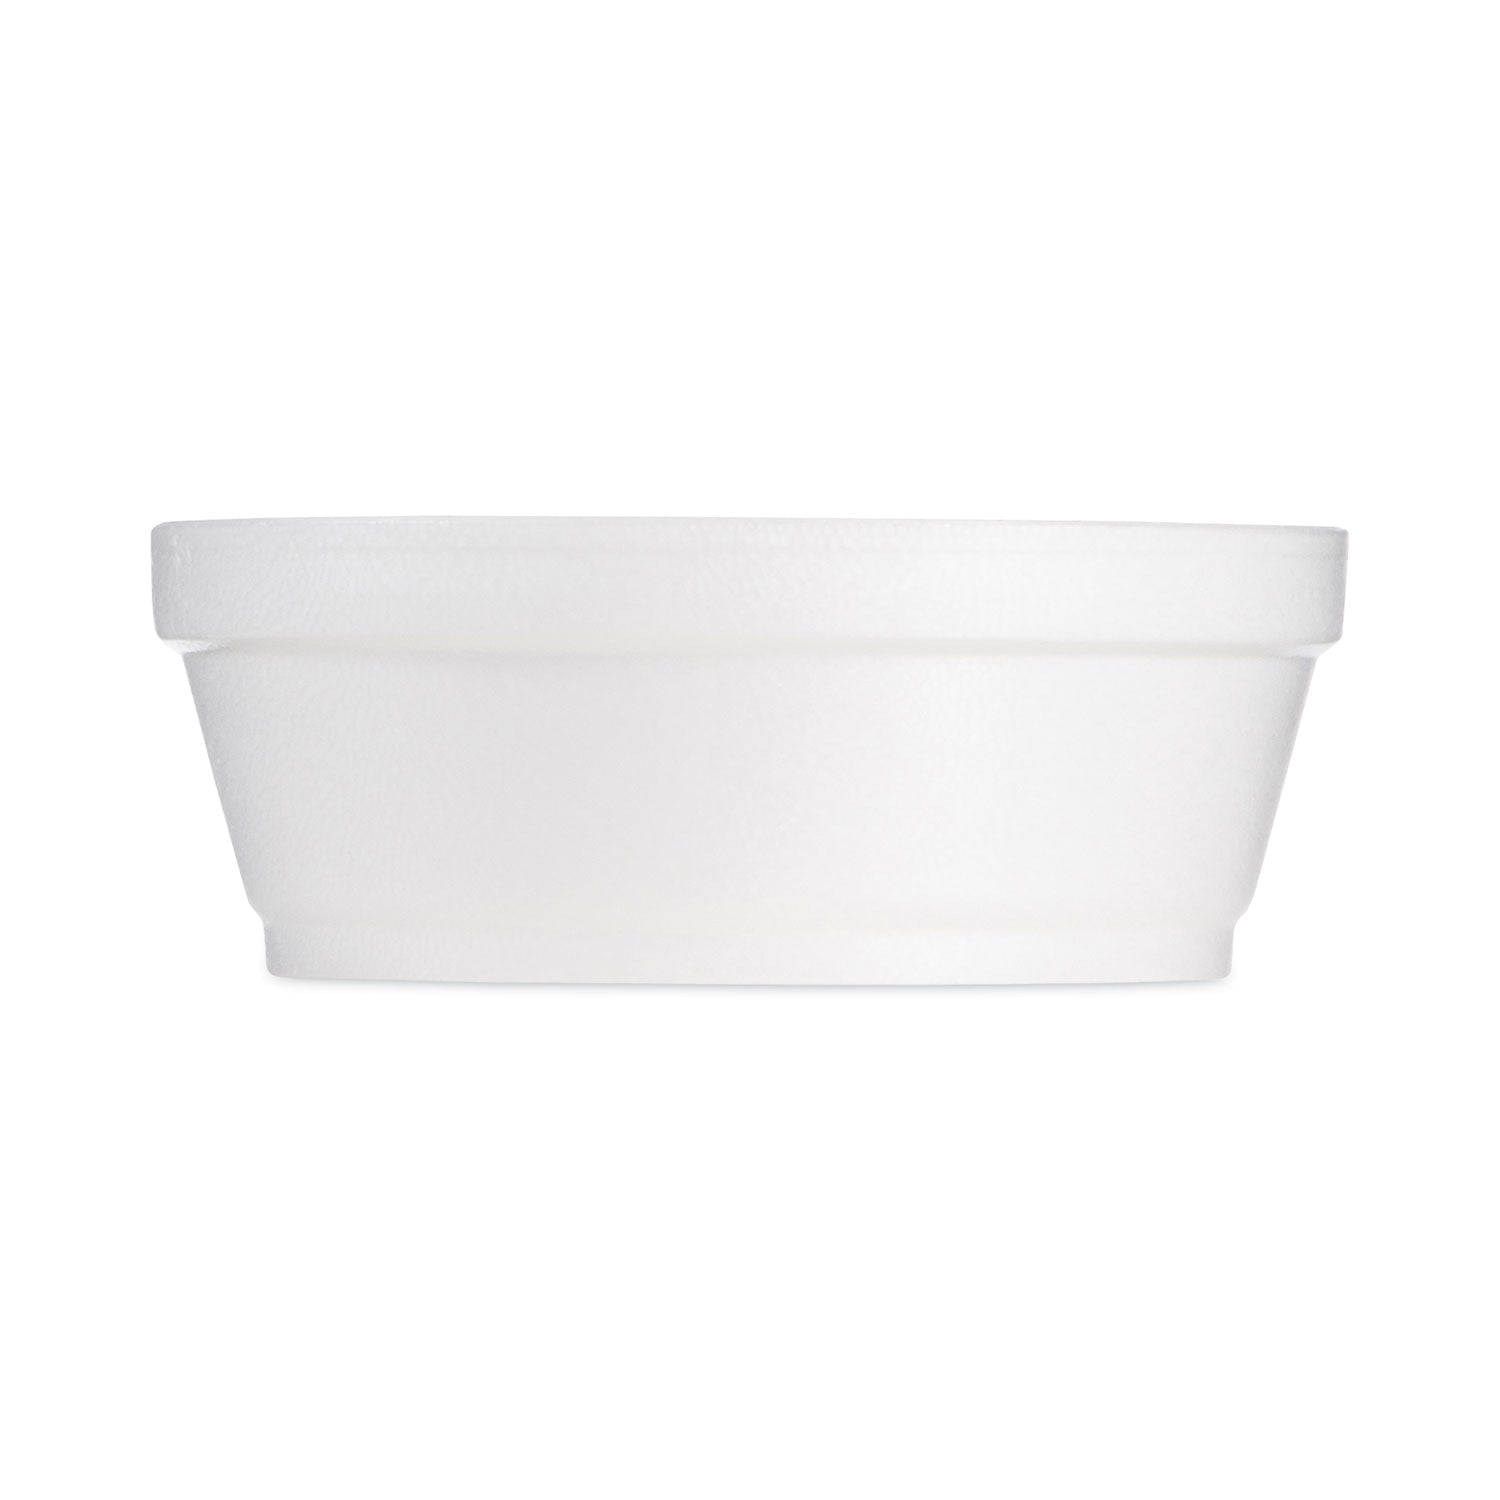 Foam Container, Squat, 8 oz, 4.63" Diameter x 1.13"h, White, 500/Carton - 